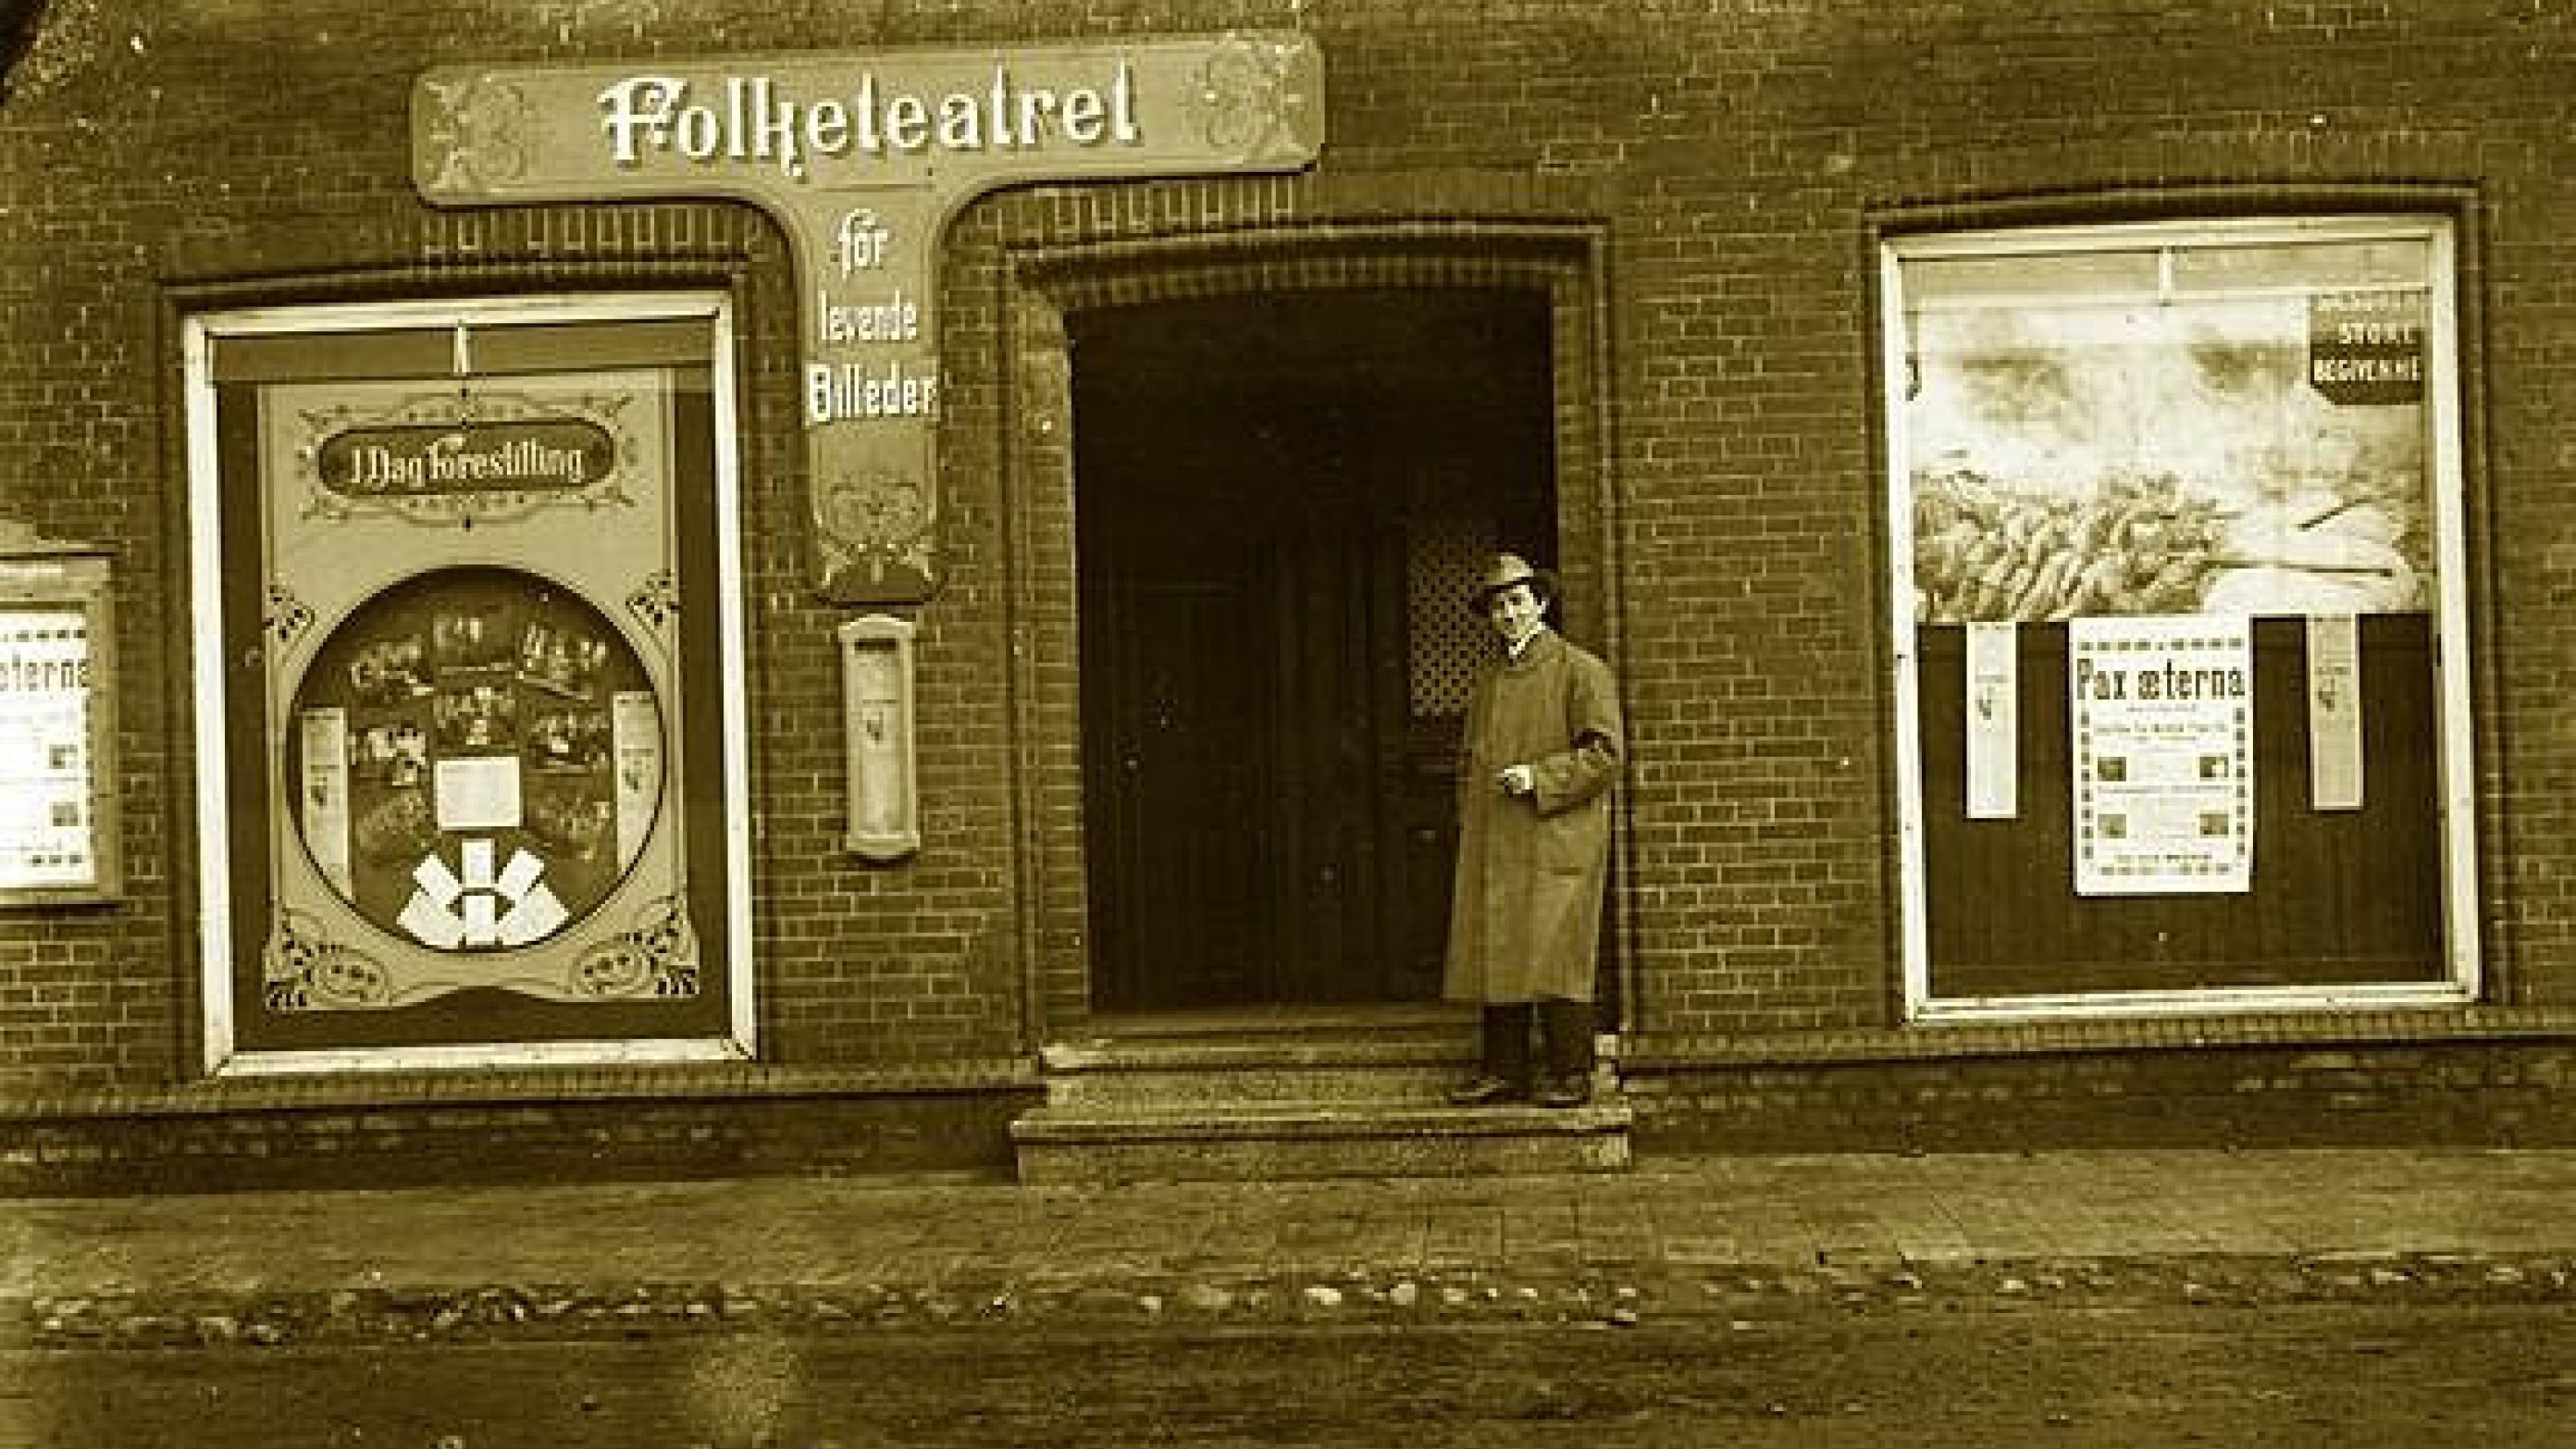 "Folketeatret" i Gørding, 1918. På plakaten er antikrigsfilmen "Pax æterna" - en dansk stumfilm fra 1917, som i skyggen af 1. Verdenskrig ville prøve at bevæge de stridende parter til fred. Det var verdens første antikrigsfilm. Foto: Gørding Sognearkiv.